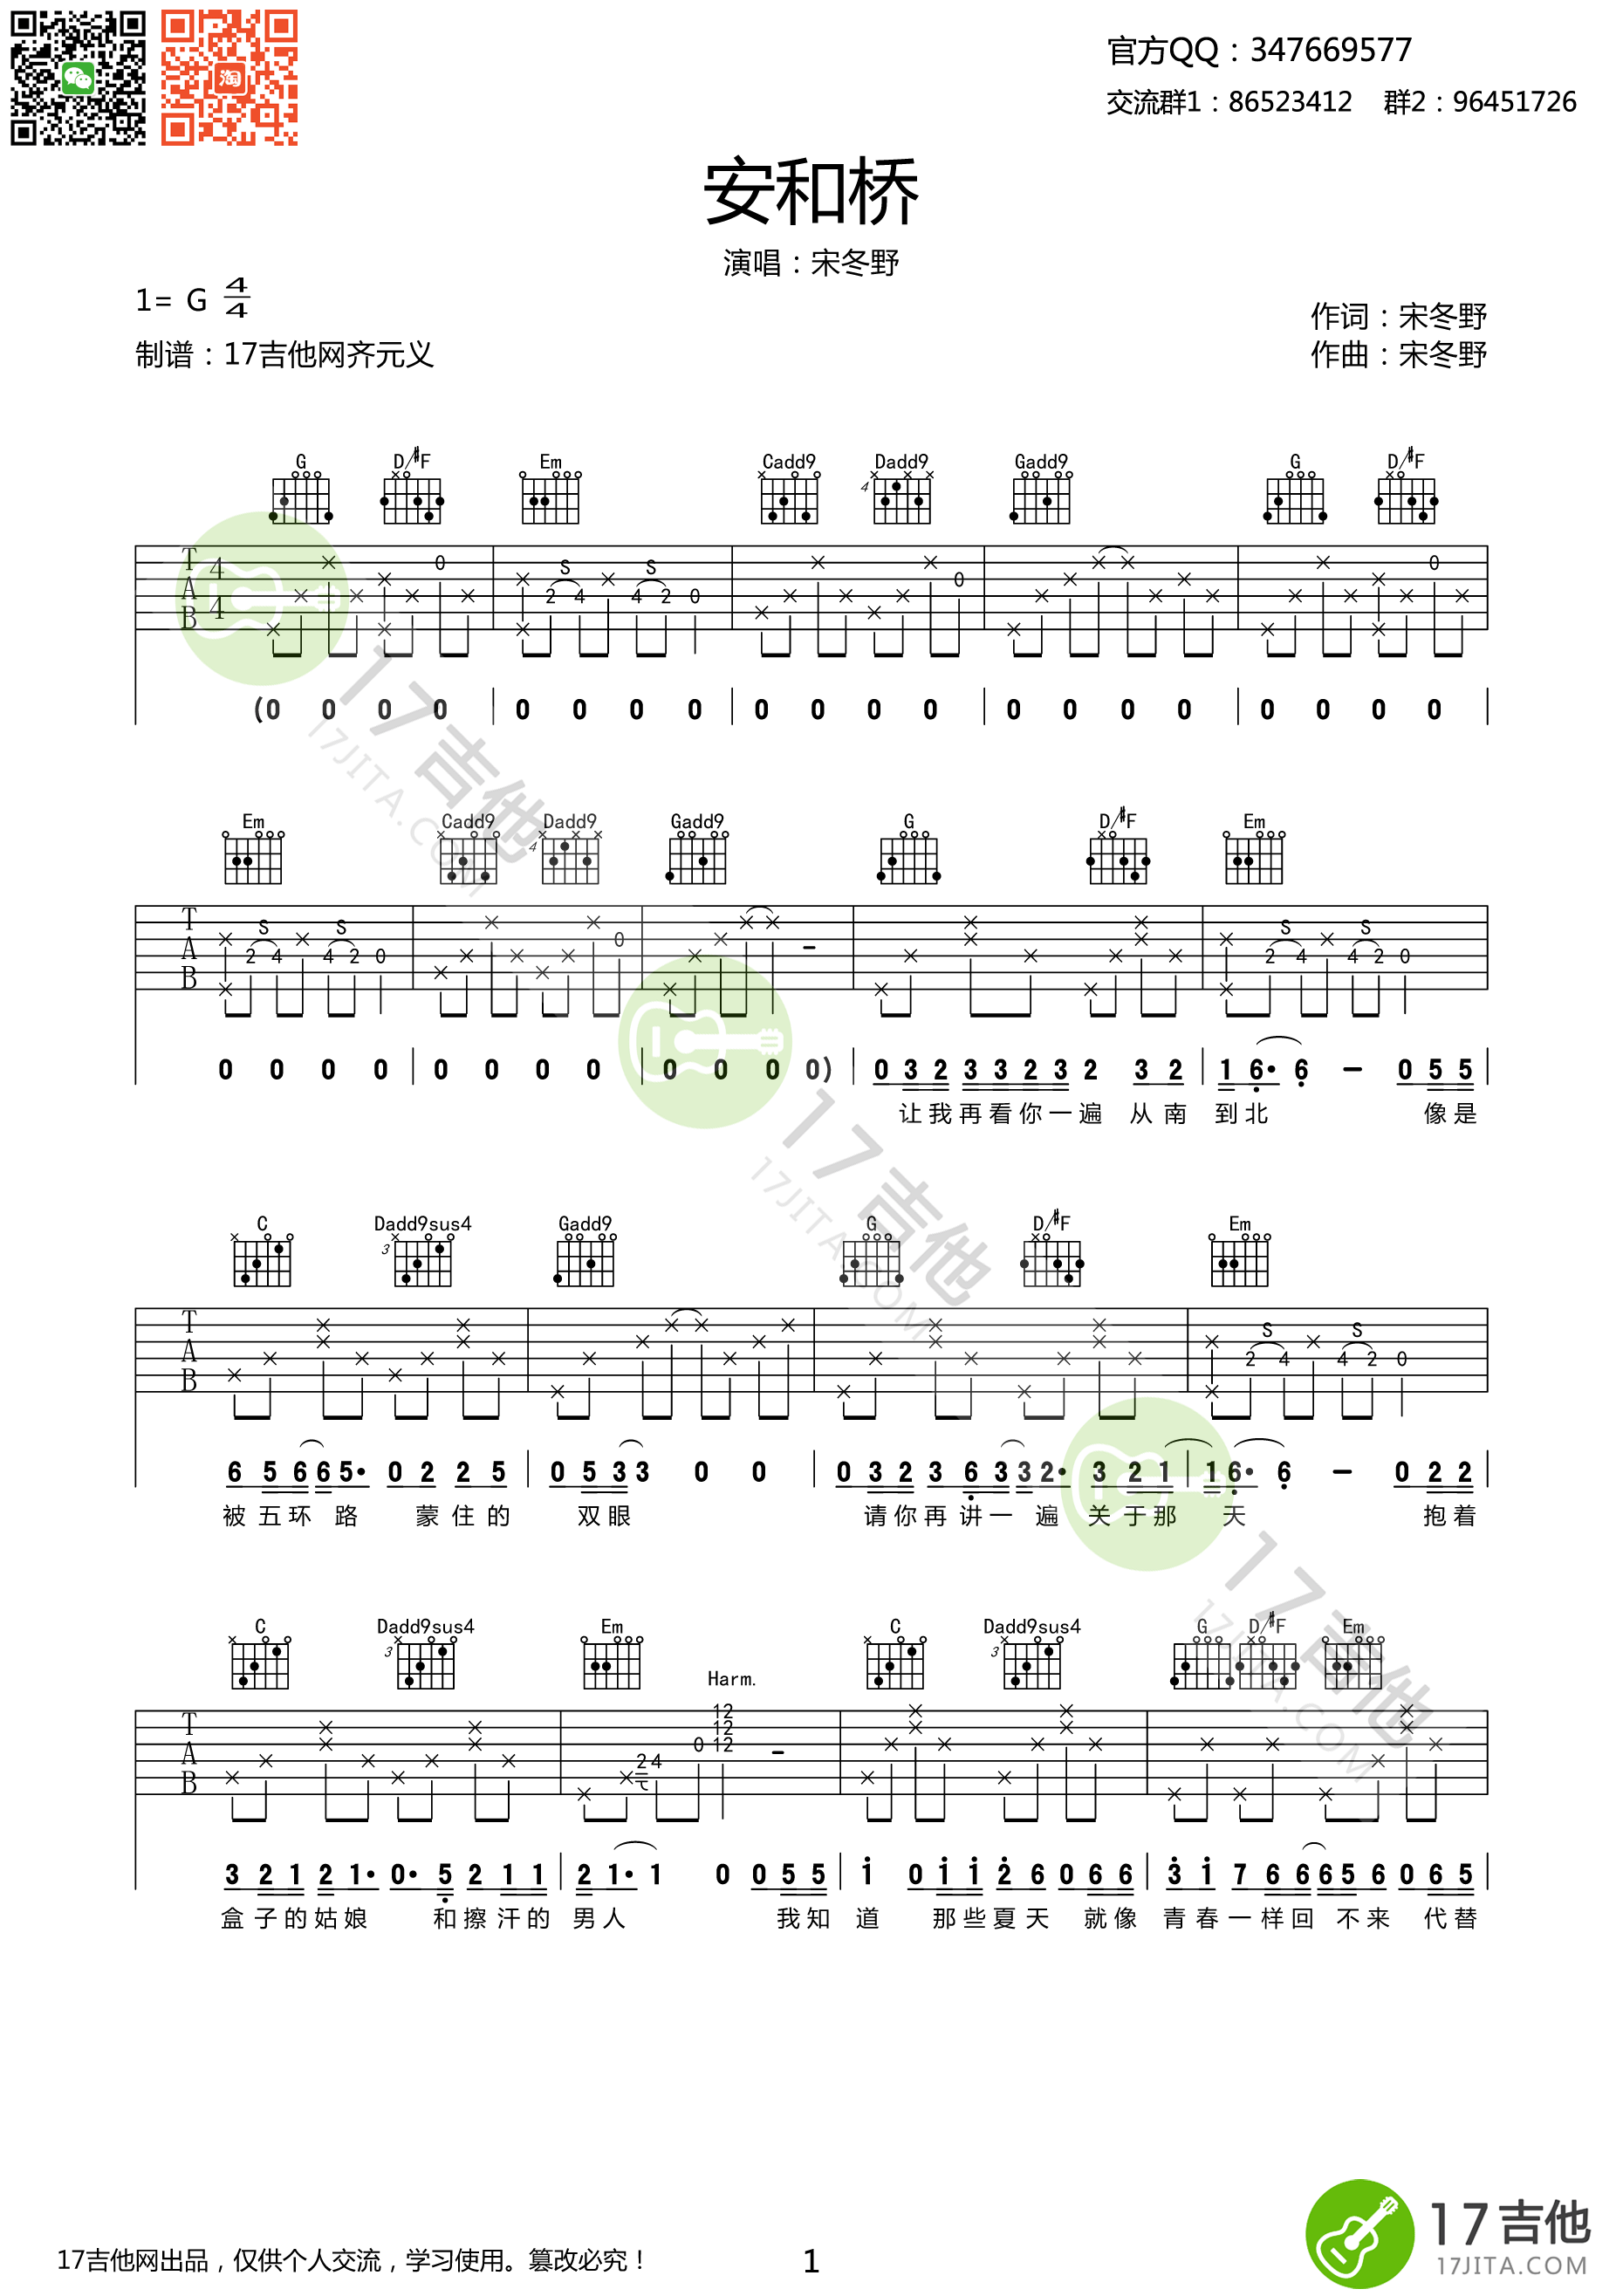 钢琴谱《安和桥》用简单数字版制谱 - 白痴弹法 - 单手双手钢琴谱 - 钢琴简谱